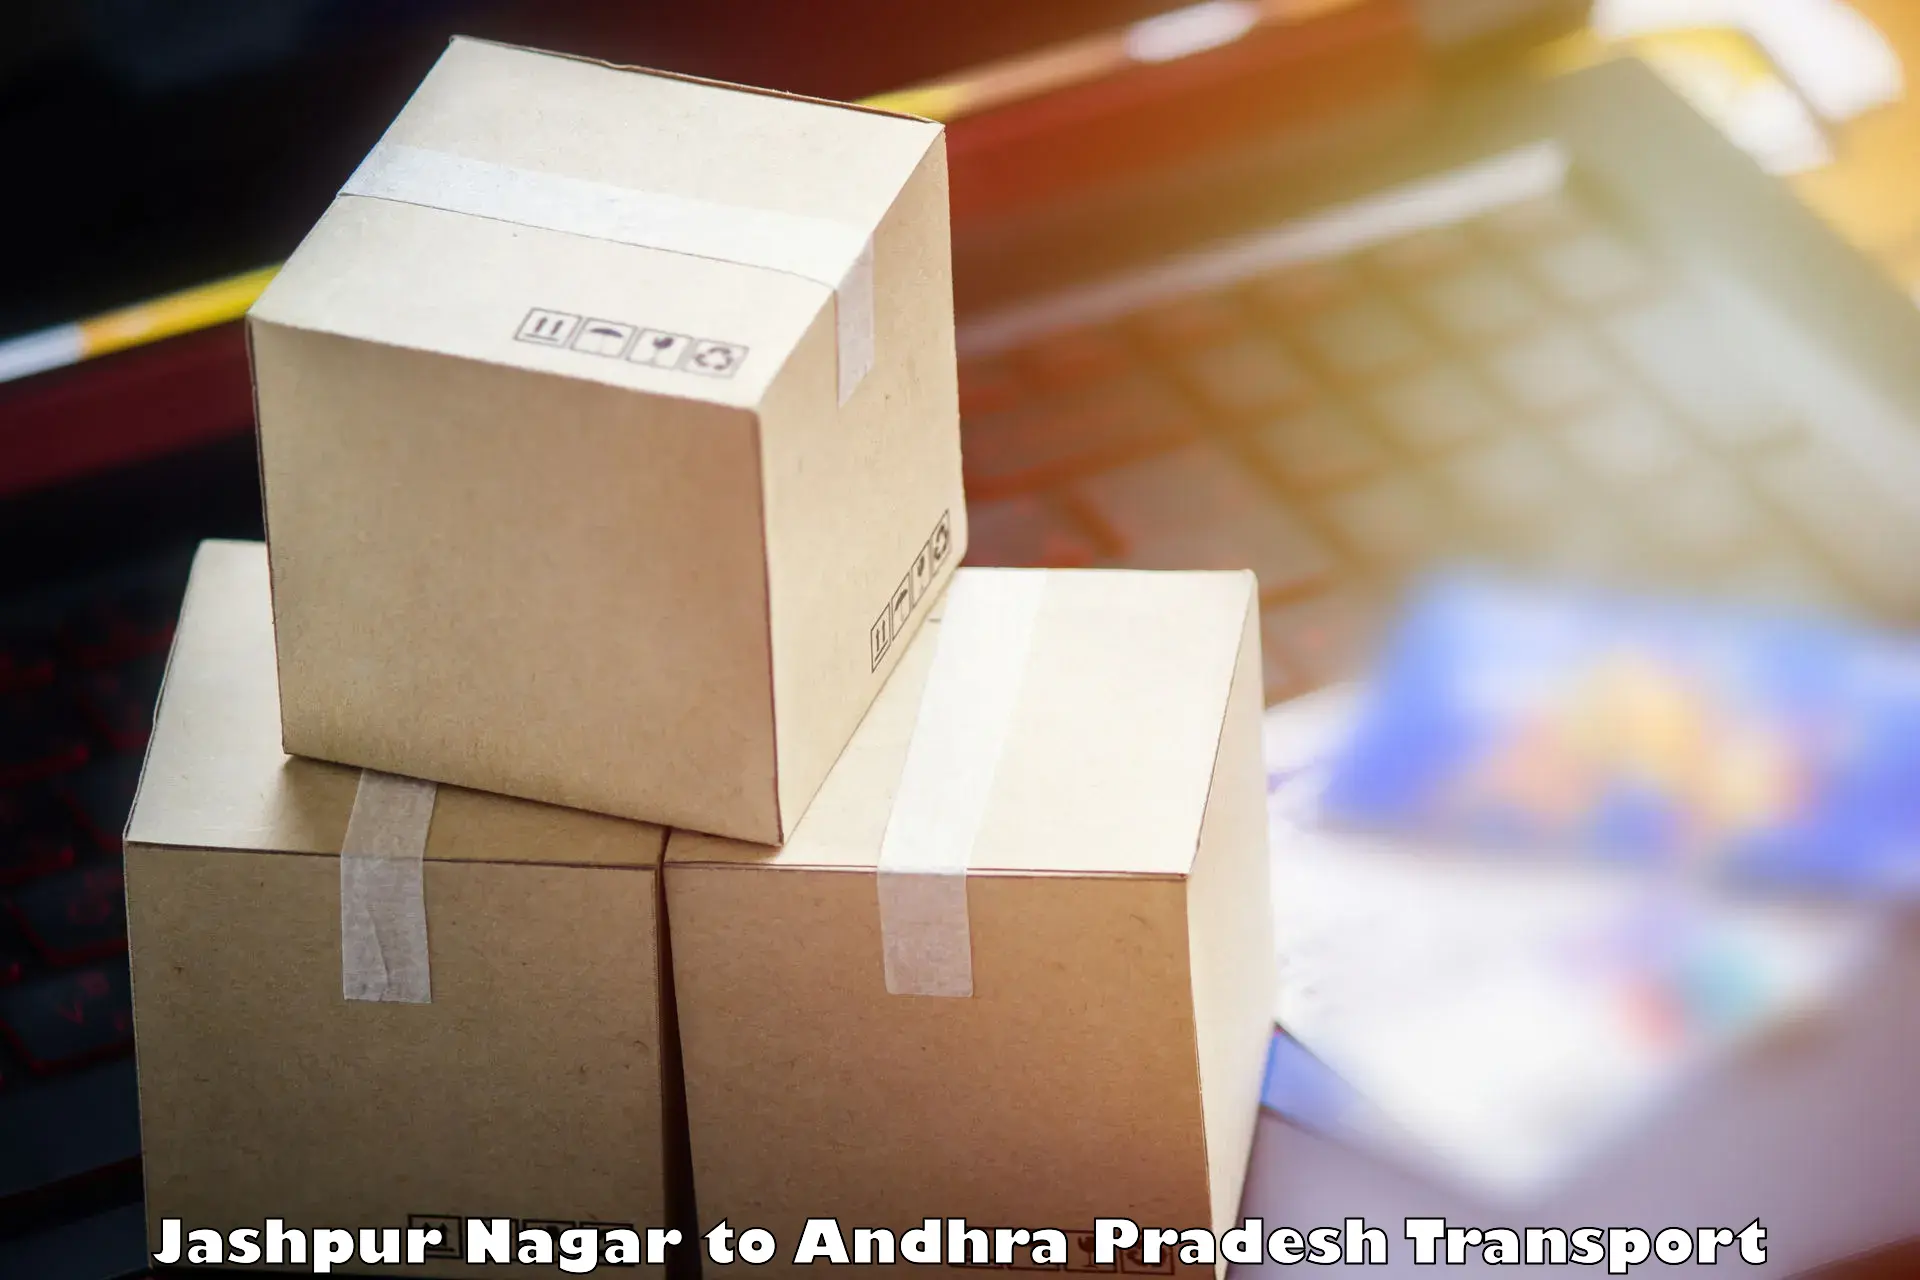 Vehicle parcel service Jashpur Nagar to Visakhapatnam Port